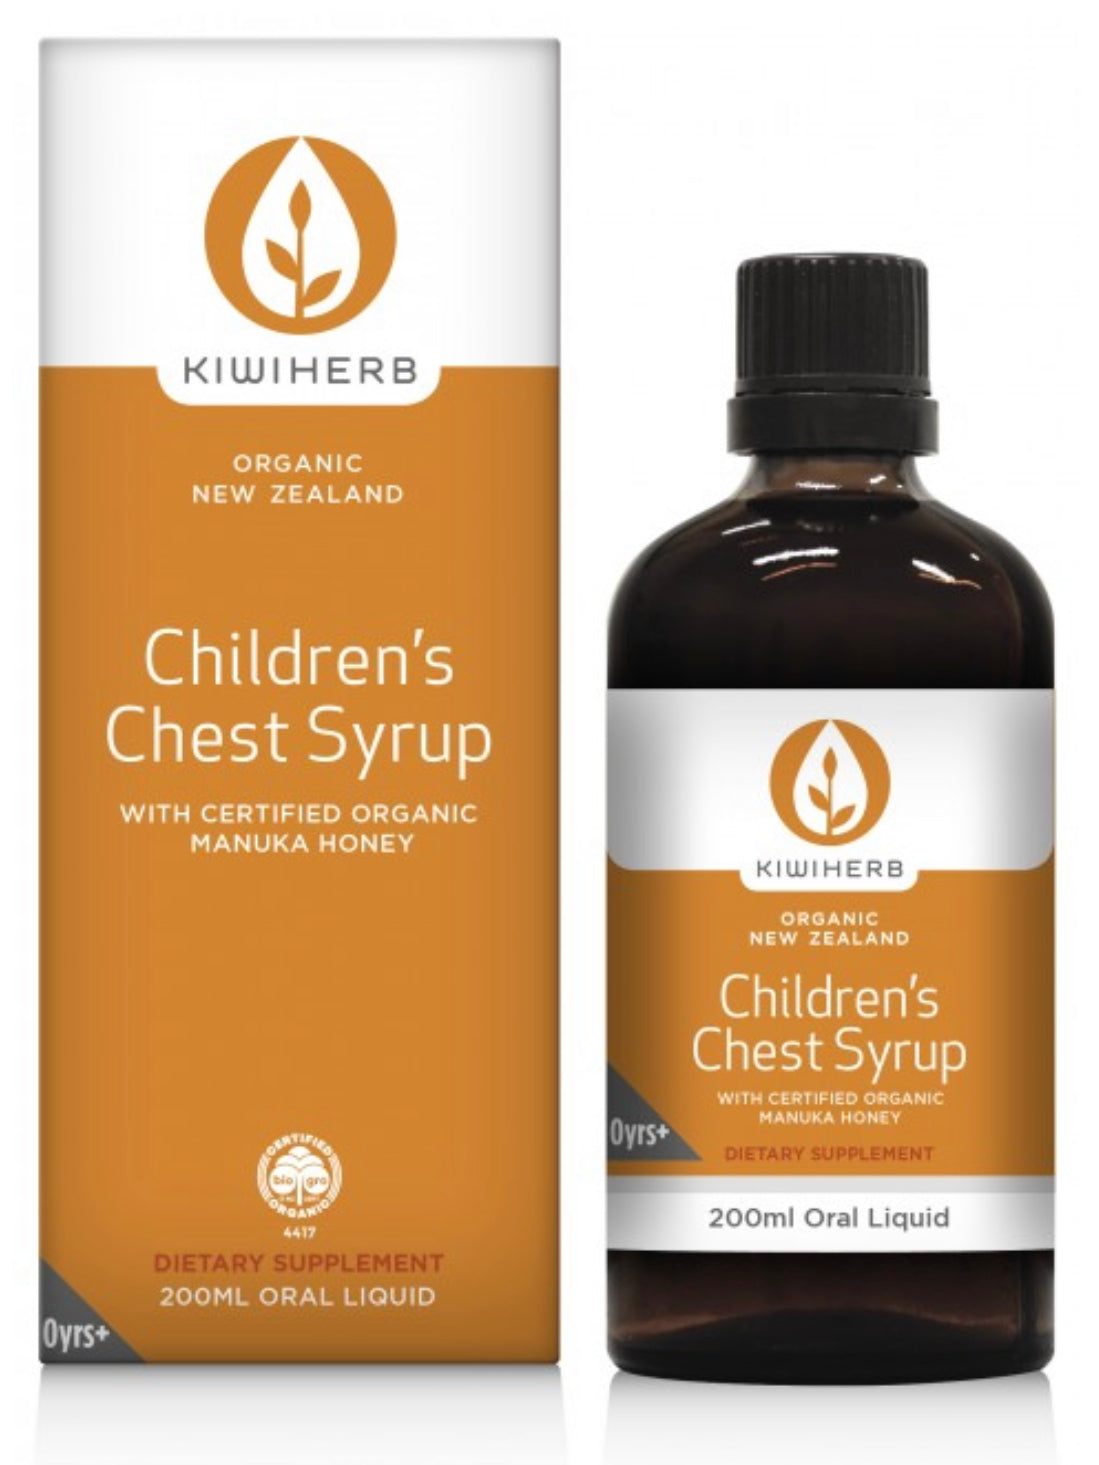 Kiwiherb Children's Chest Syrup